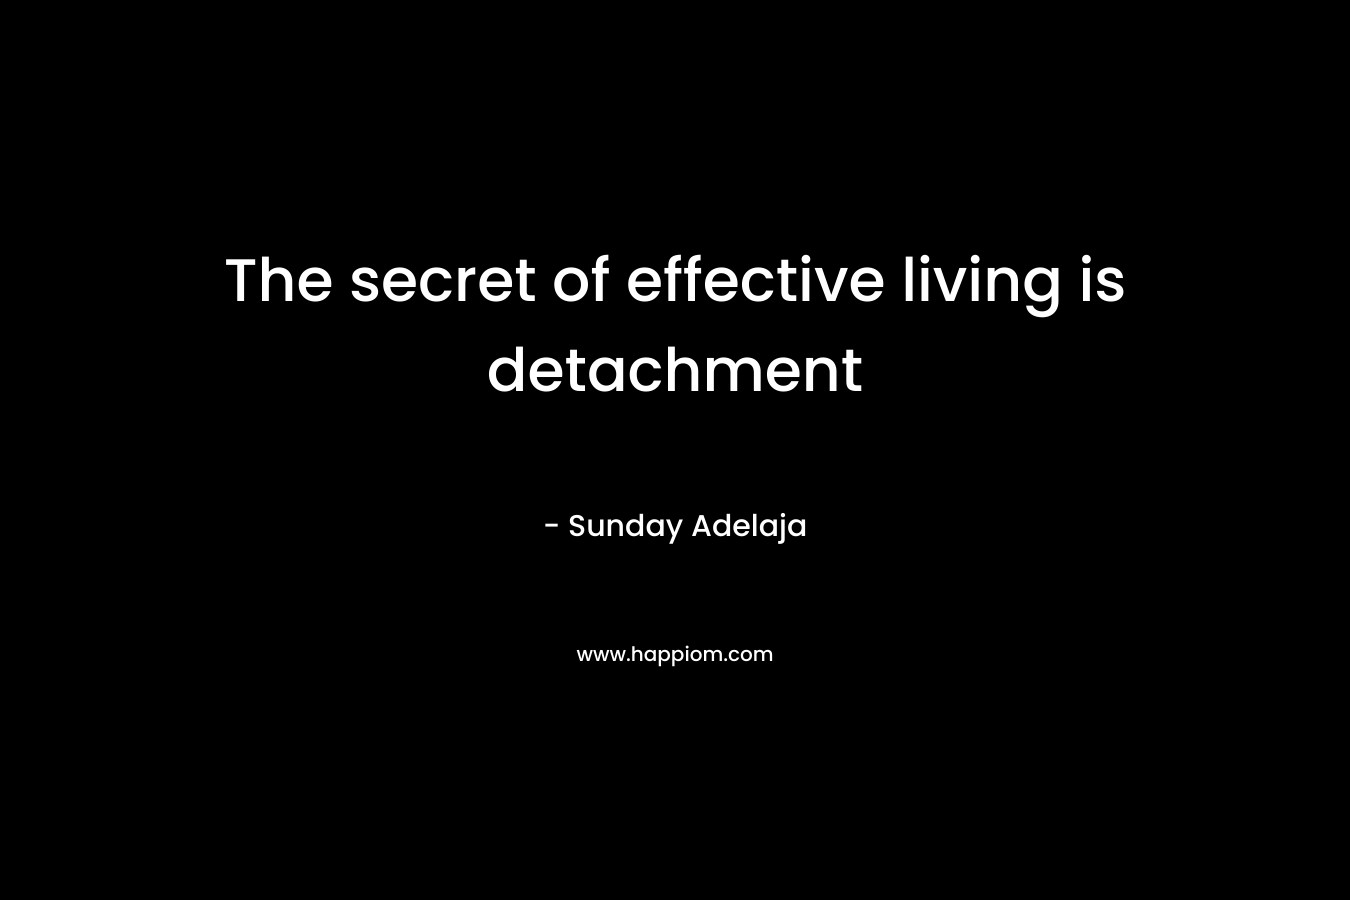 The secret of effective living is detachment